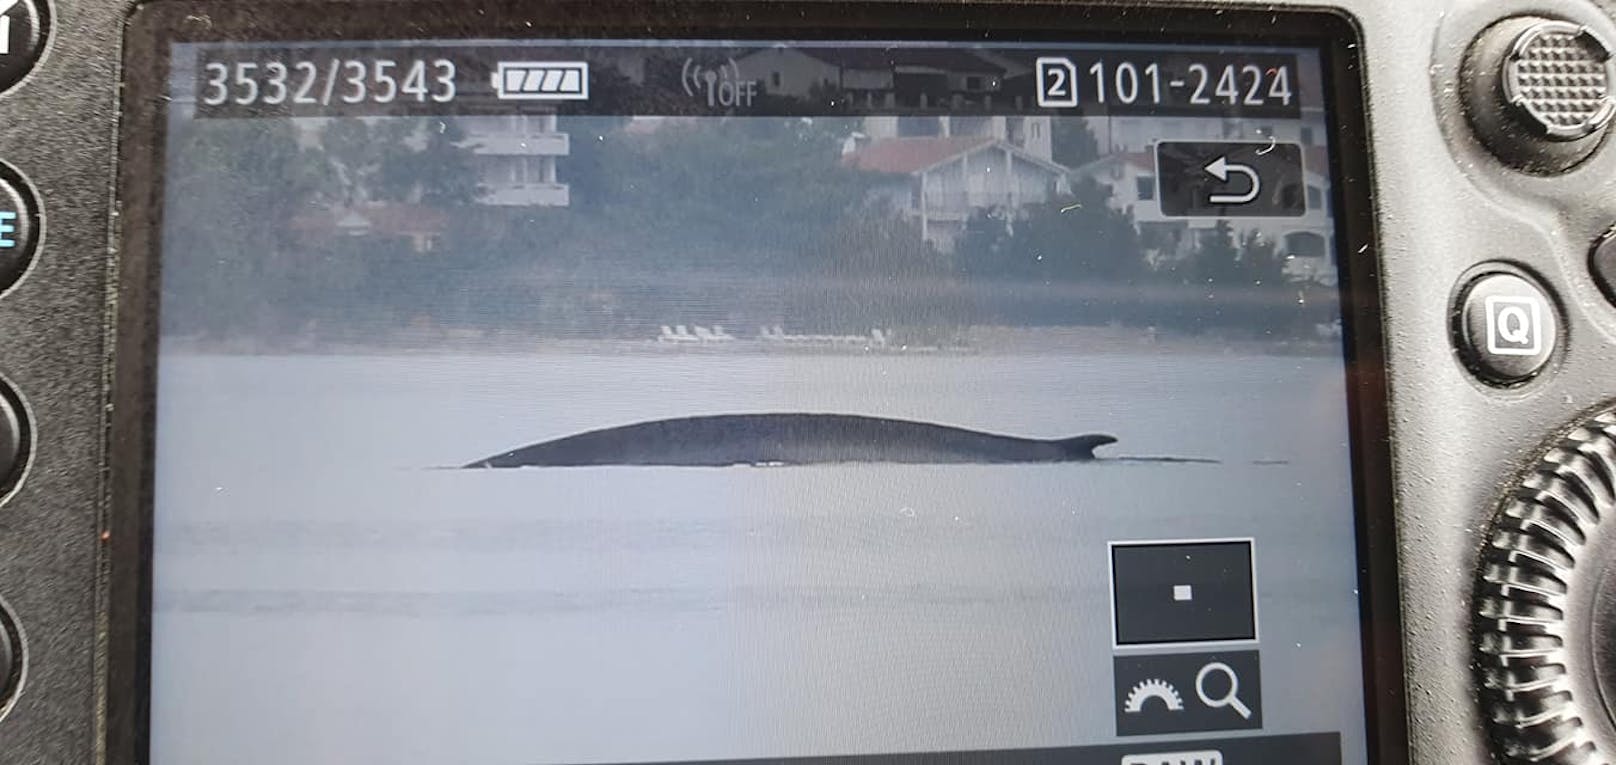 Tagelang schwamm der Wal im Velebit-Kanal herum, nun wurde er endlich gefunden. 